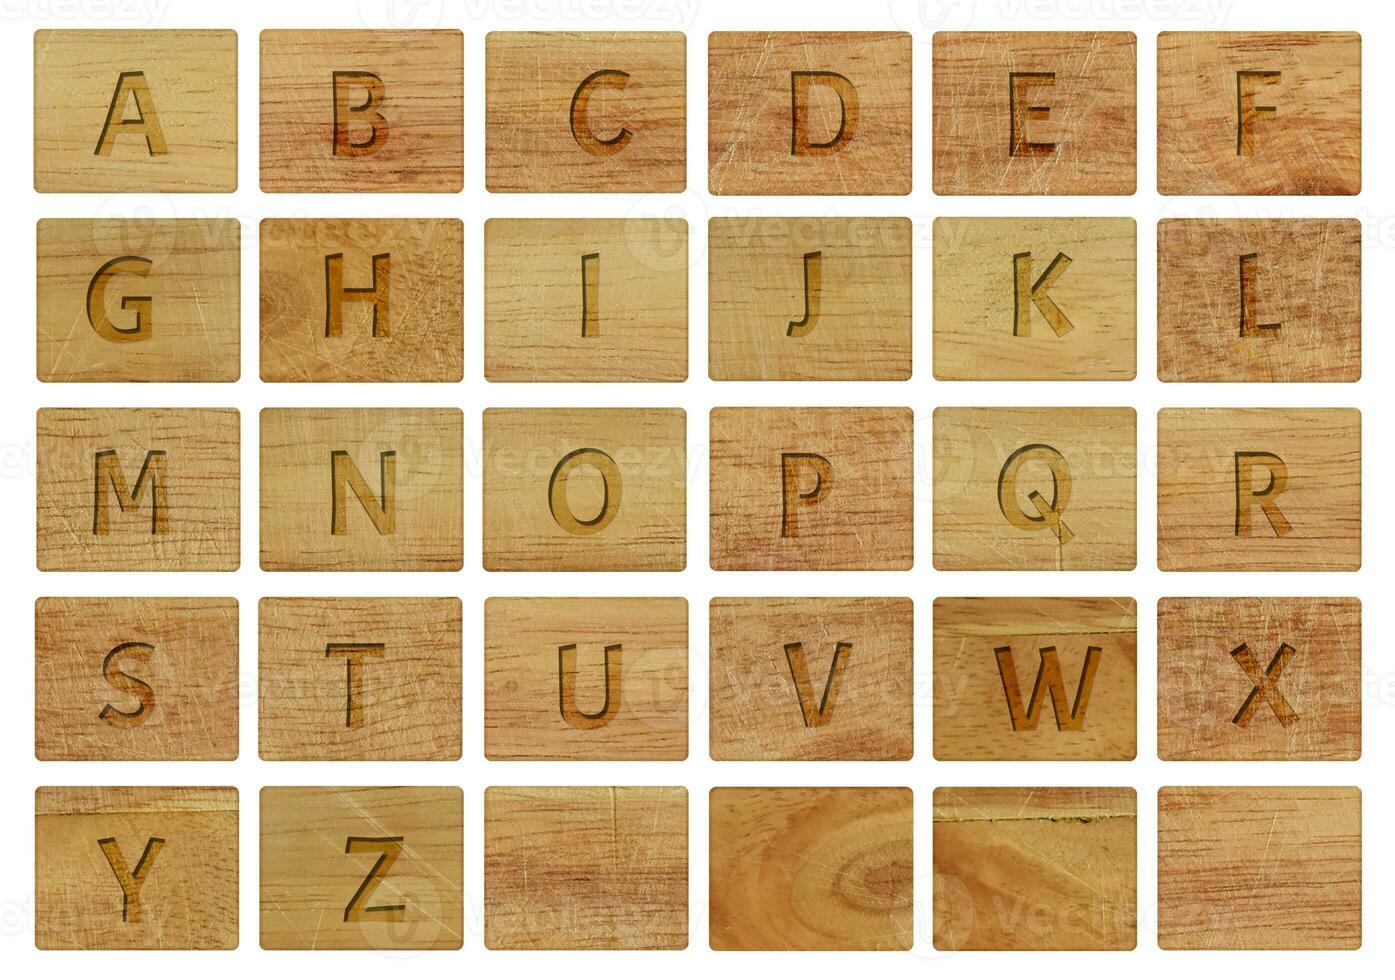 letras del alfabeto en piezas de madera, aisladas en un fondo blanco. foto